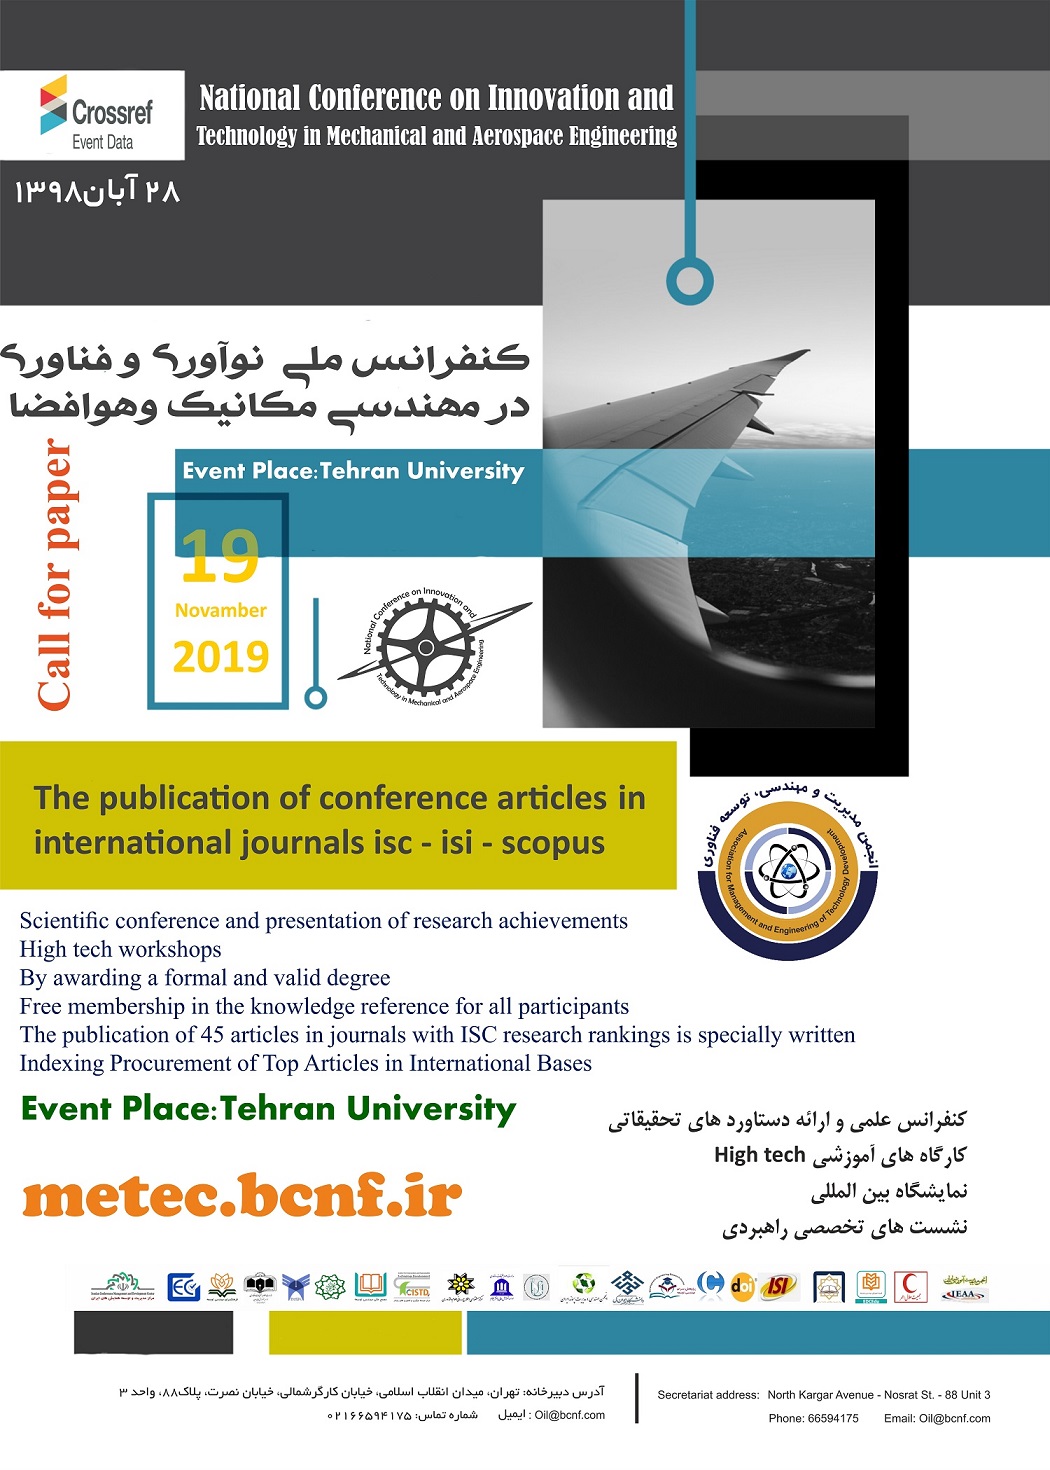 پوستر کنفرانس توسعه فناوری در مکانیک و هوافضا